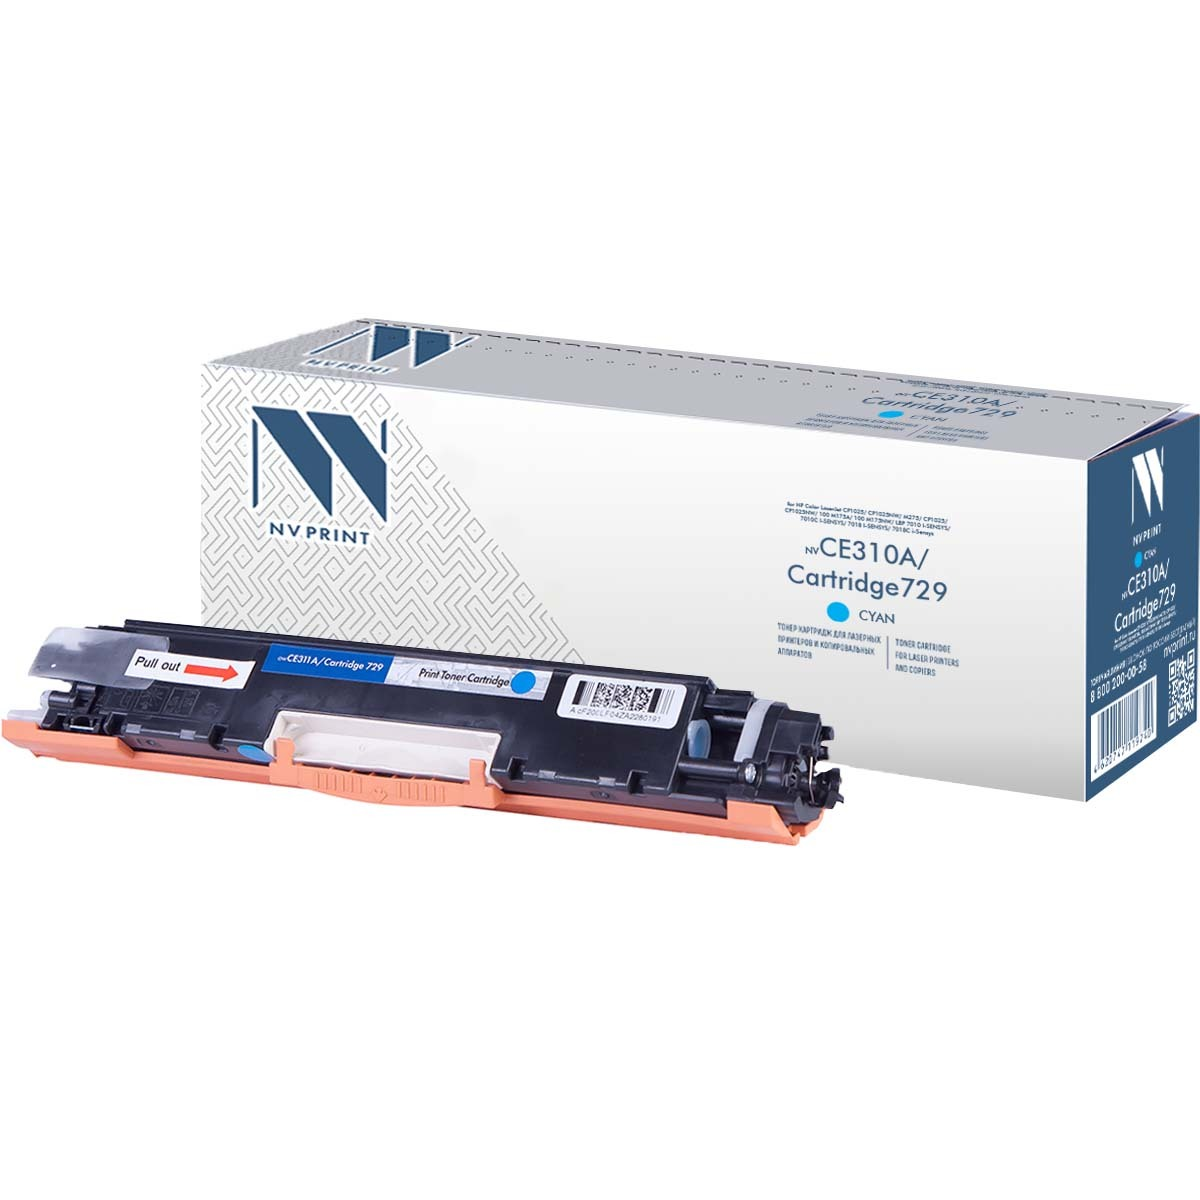  NVPrint Color LaserJet, NV-CE311A/729C